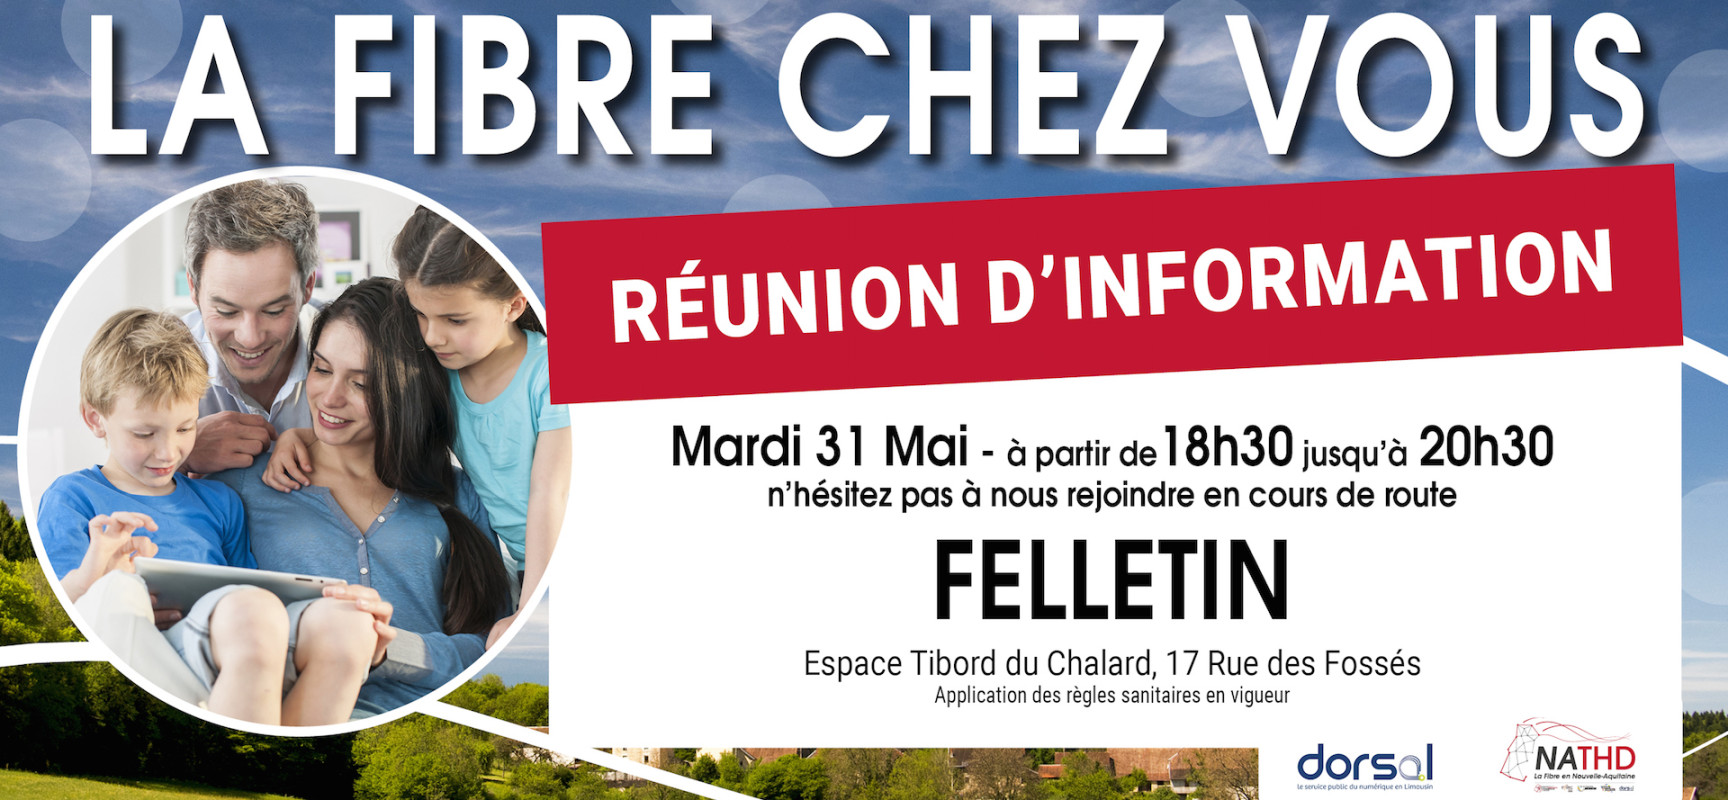 La fibre chez vous : réunion publique d’information le mardi 31 mai 2022 à Felletin